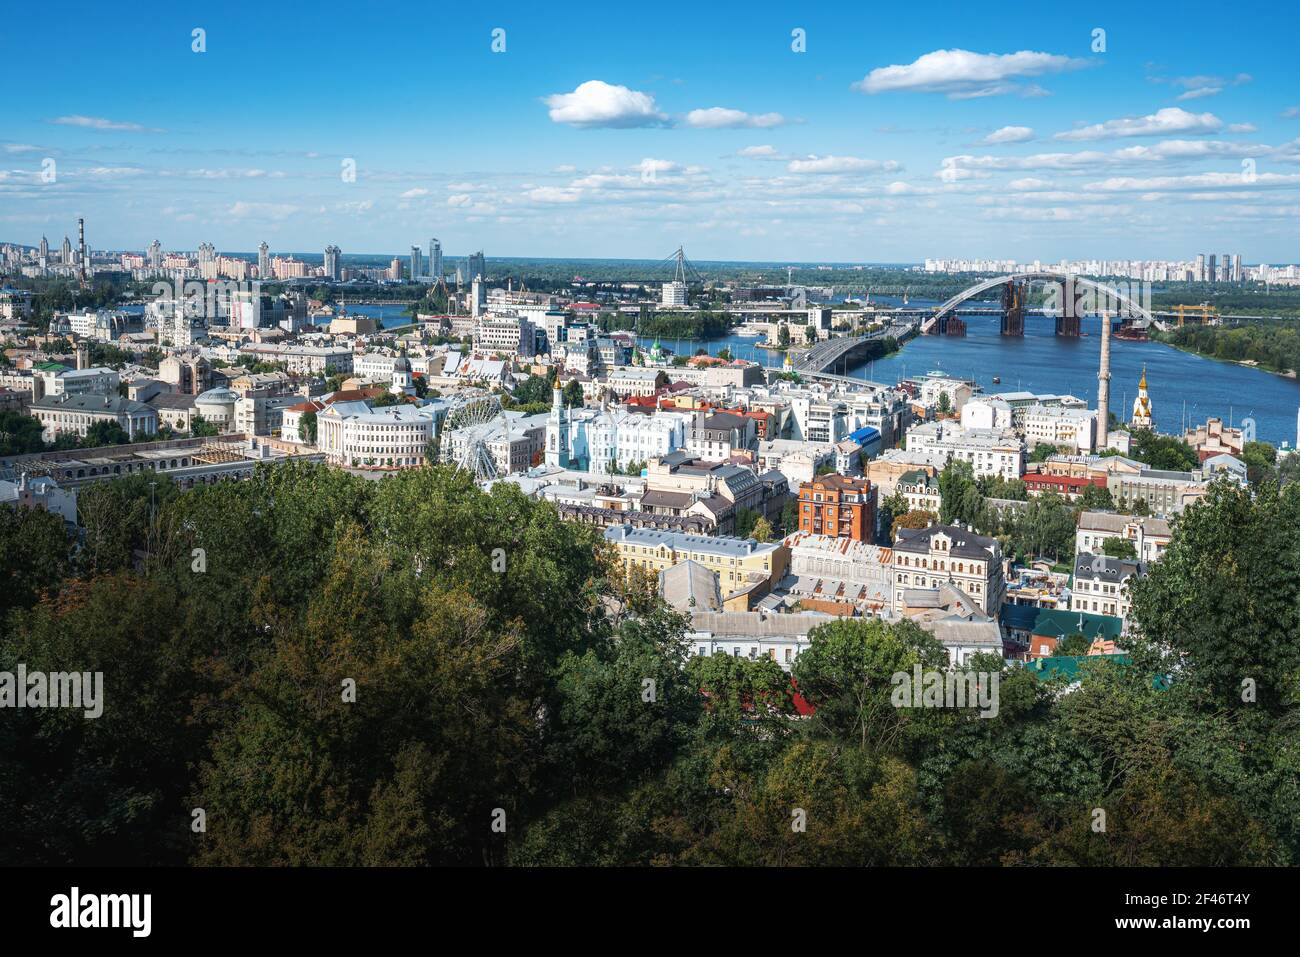 Vue aérienne de Kiev avec le fleuve Dniepr et le pont Podolsky - Kiev, Ukraine Banque D'Images